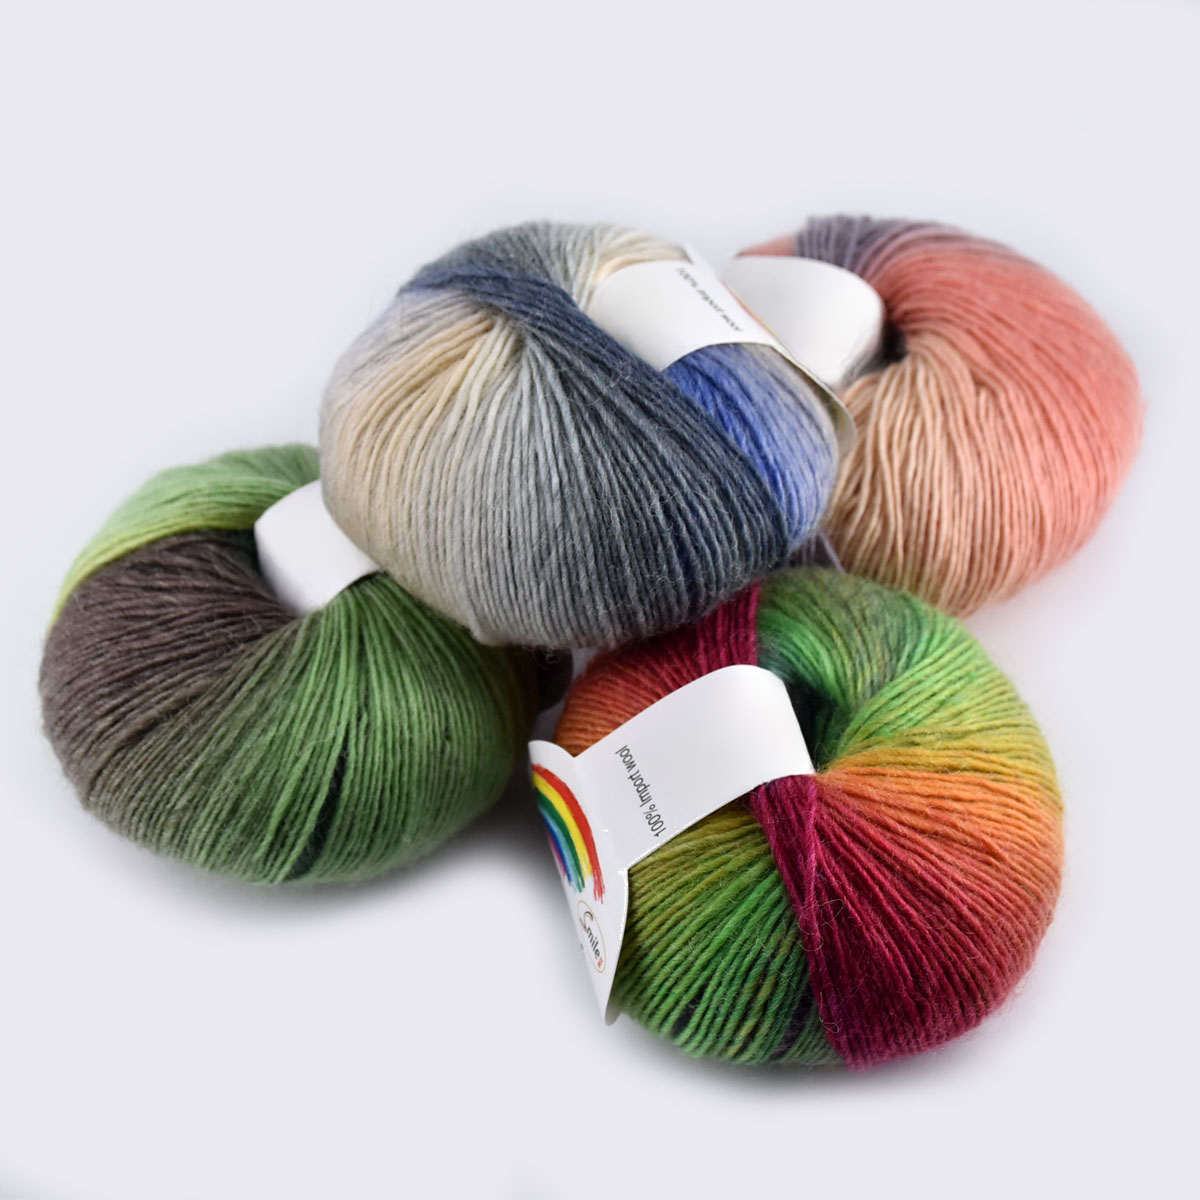 Hilo de ganchillo de algodón multicolor, 6 unidades, 1.76 onzas